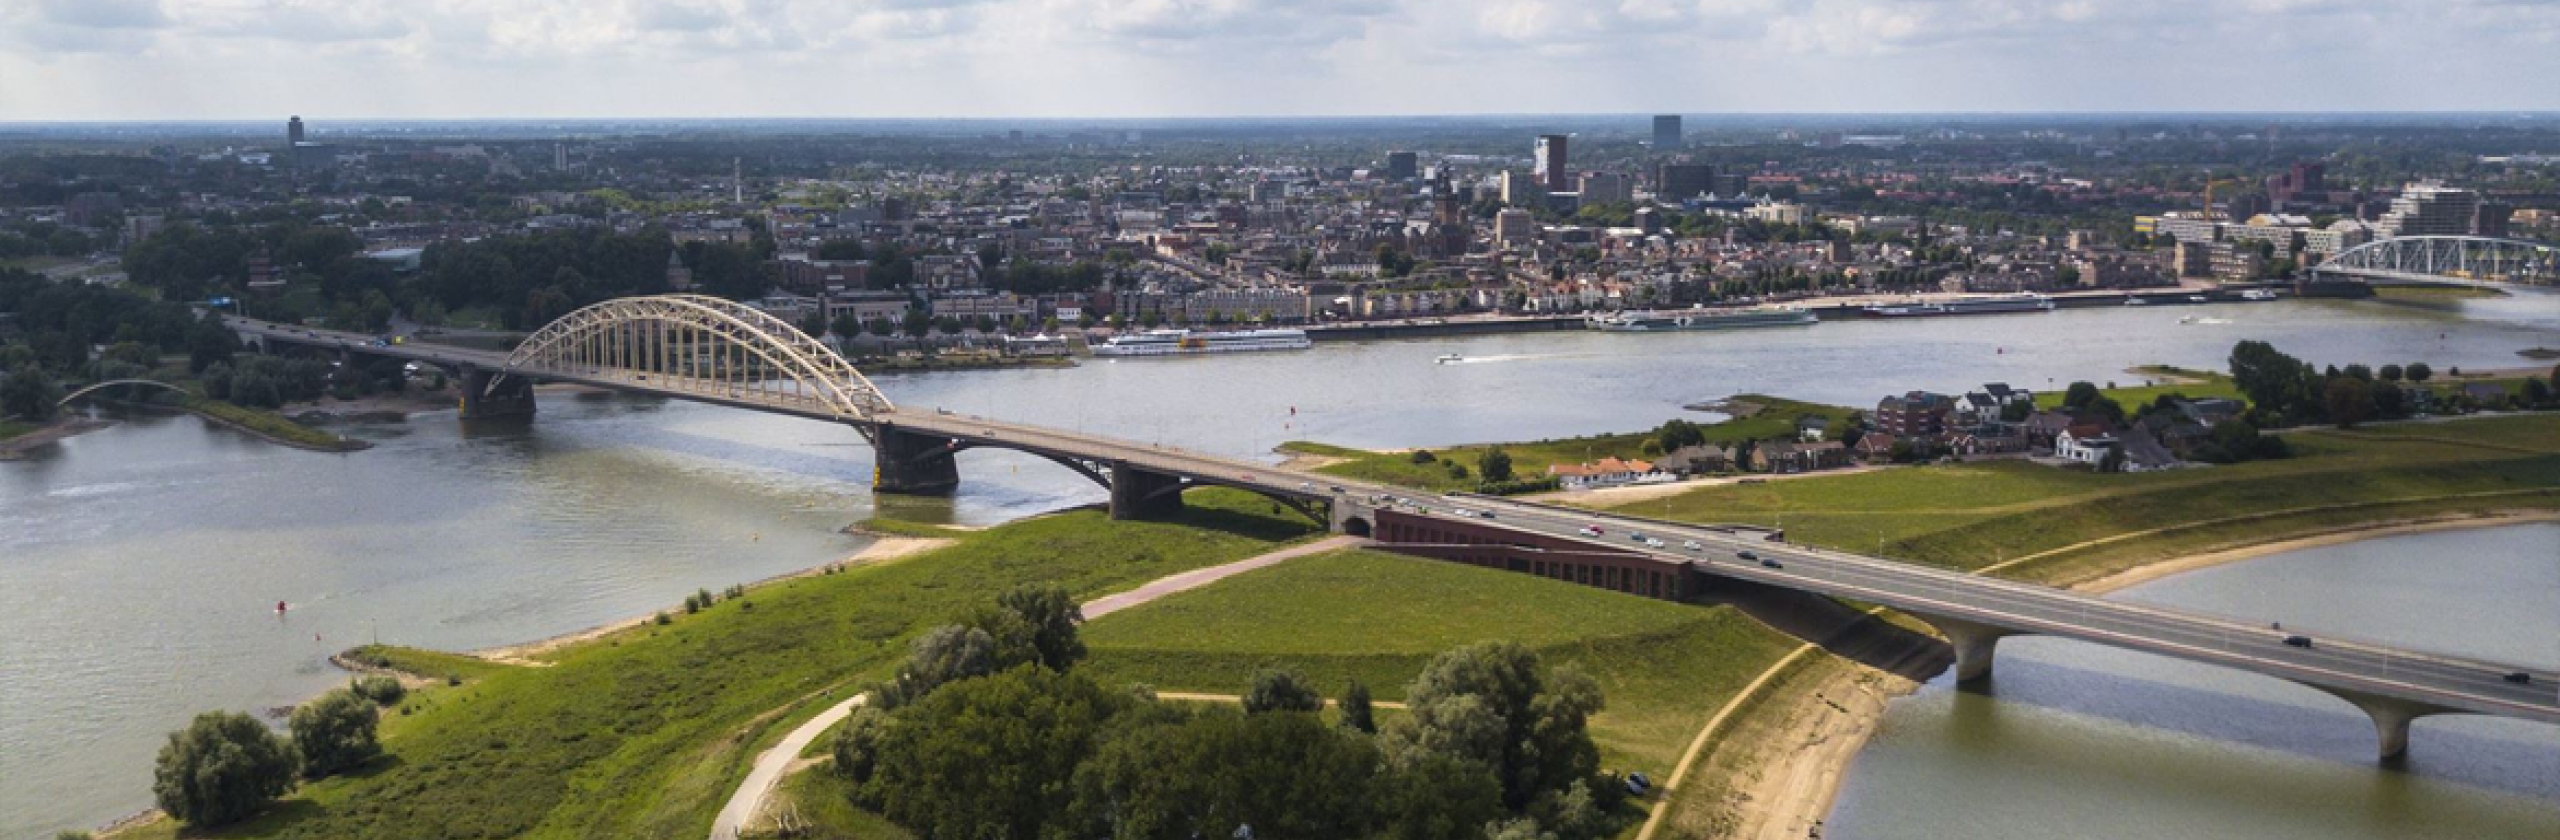 Webdevelopment Nijmegen